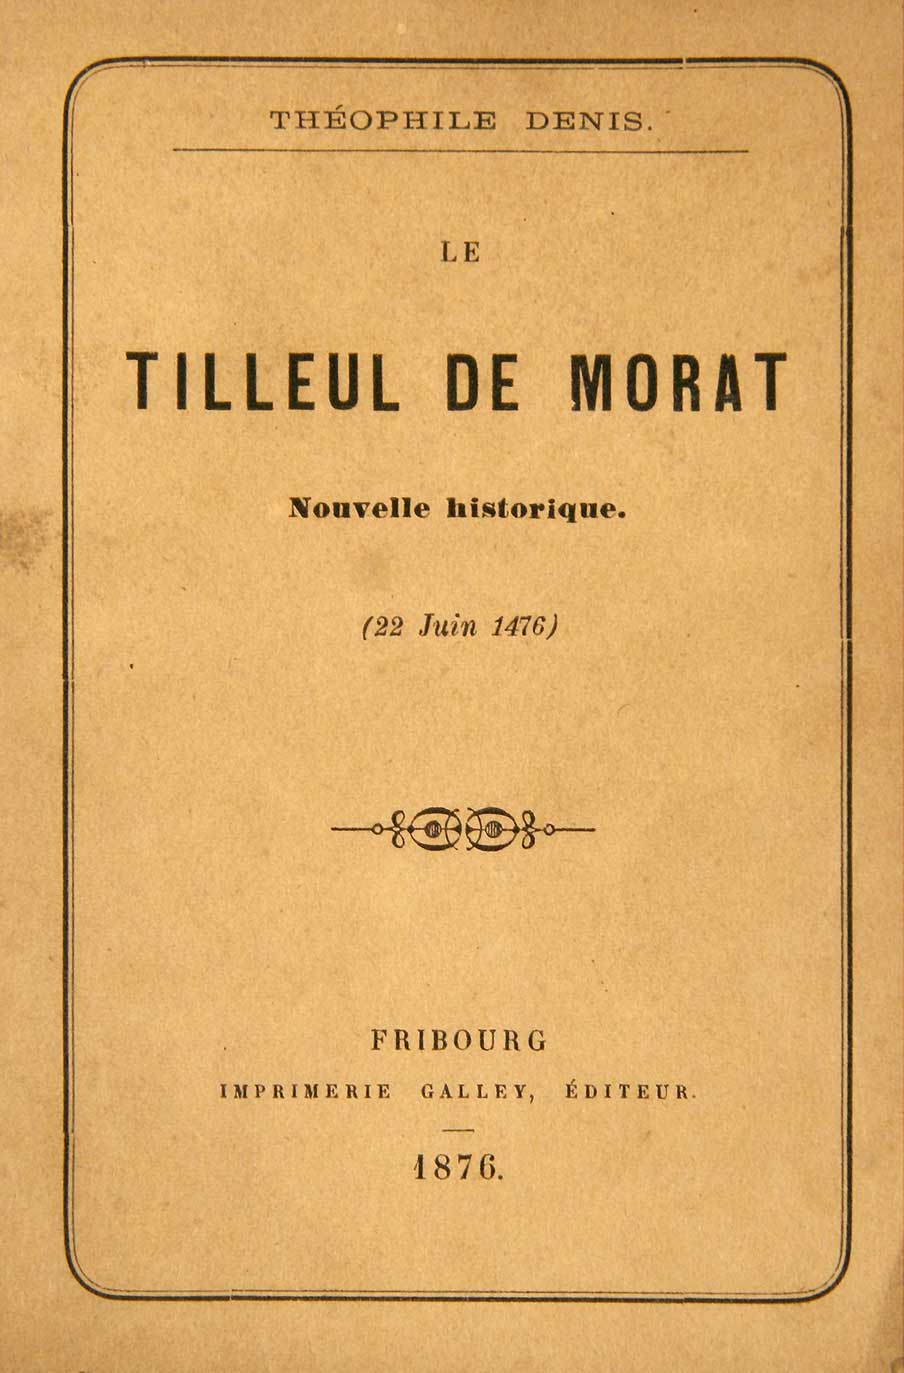 DENIS, Thophile: - Le tilleul de Morat. Nouvelle historique (22 juin 1476).